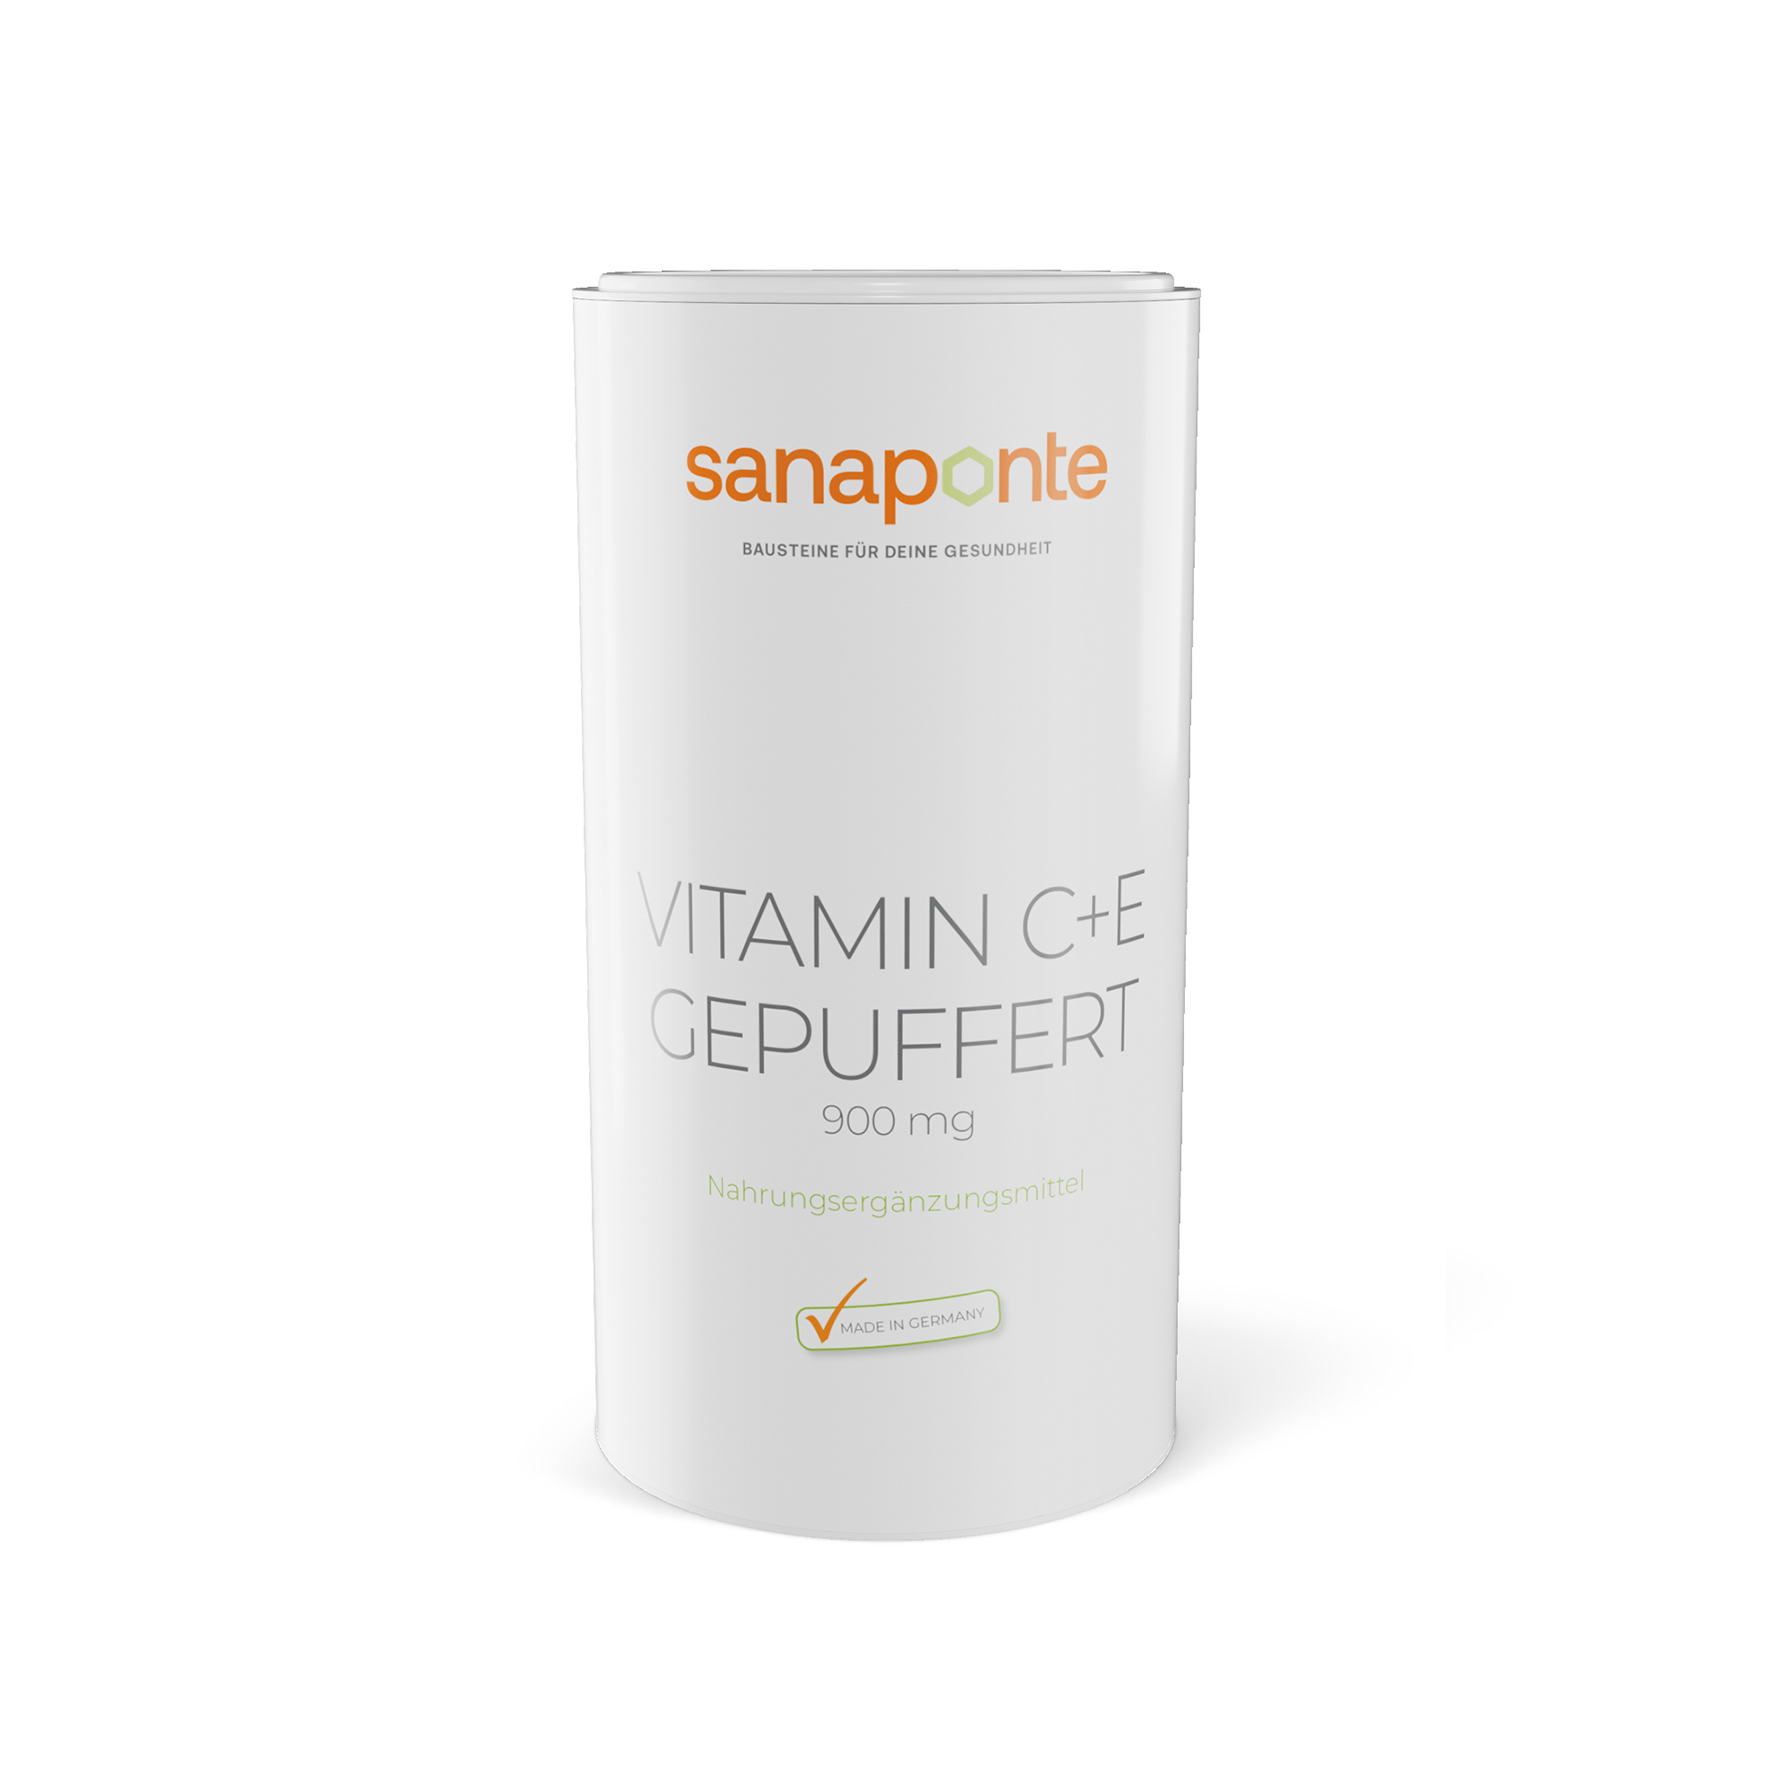 Vitamin C+E gepuffert 900 mg